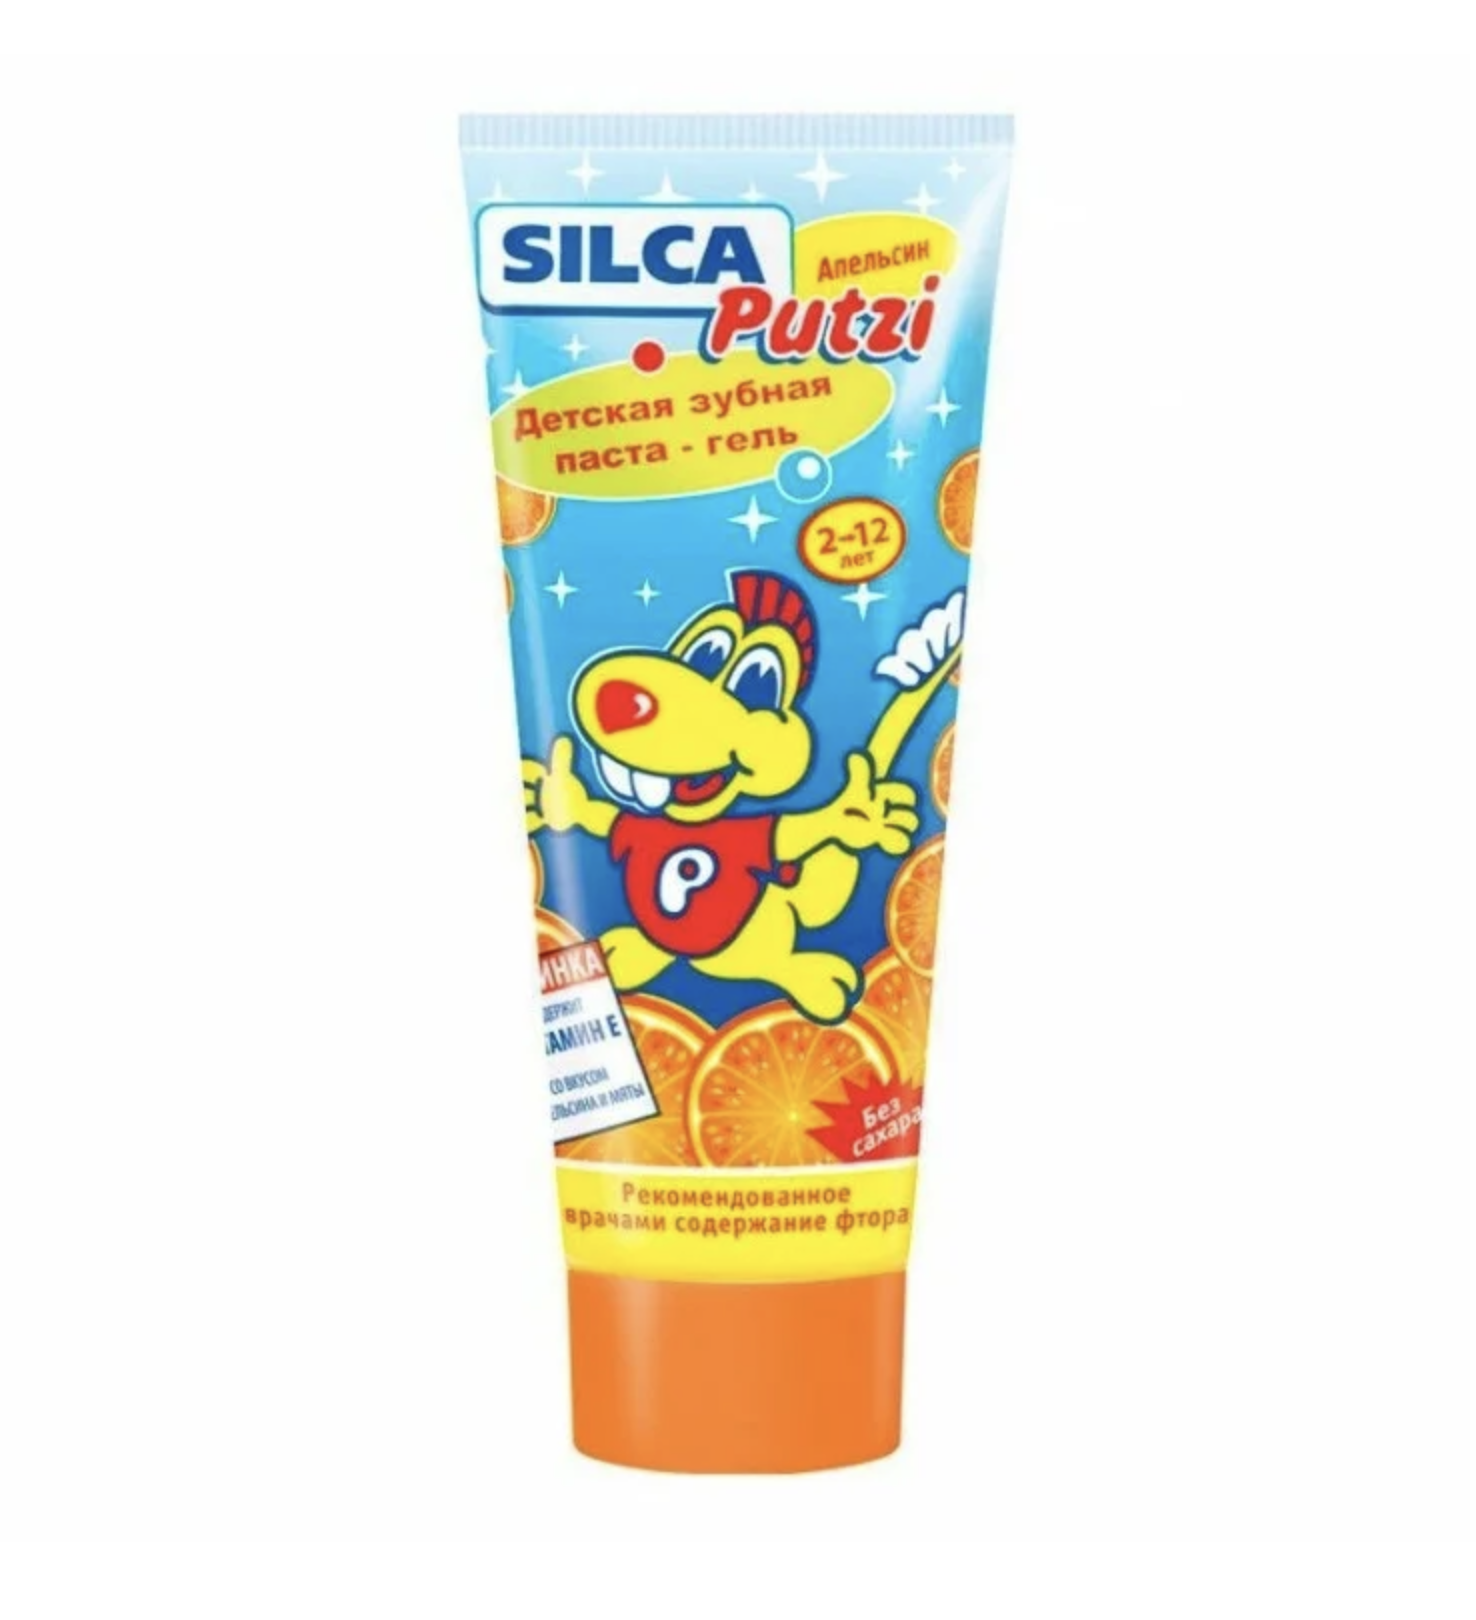 картинка СилкаМед / SilcaMed Putzi - Зубная паста-гель для детей 2-12 лет Апельсин 75 г